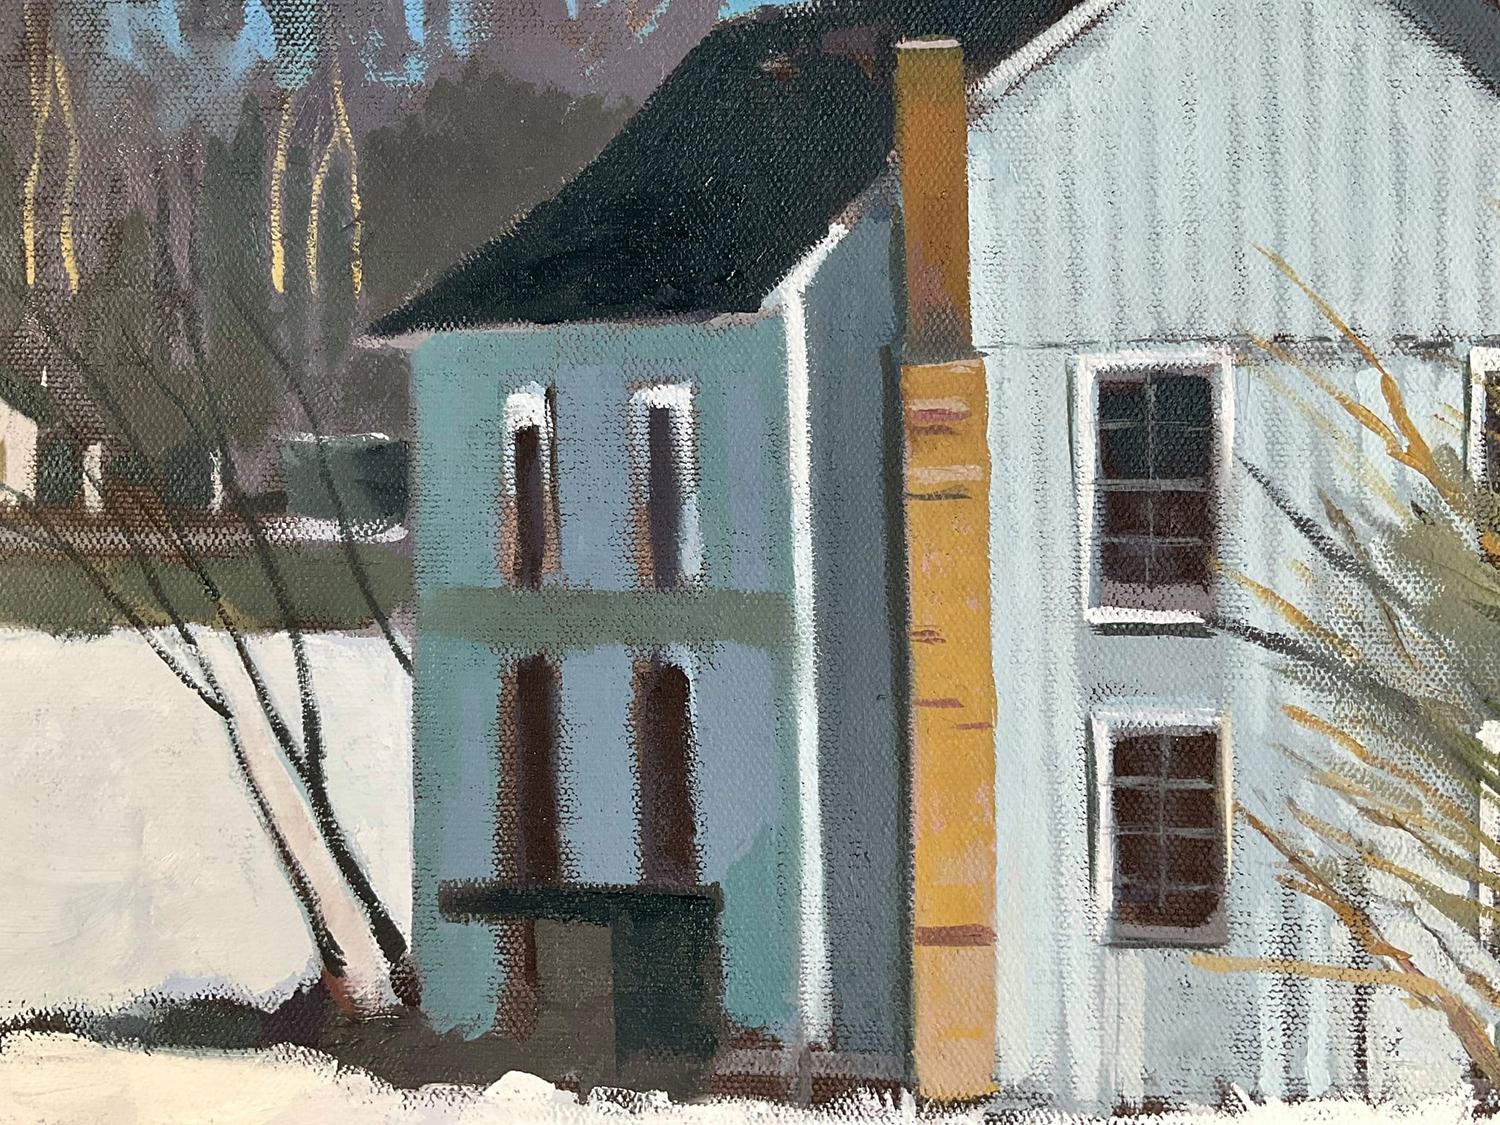 oil paintings of houses